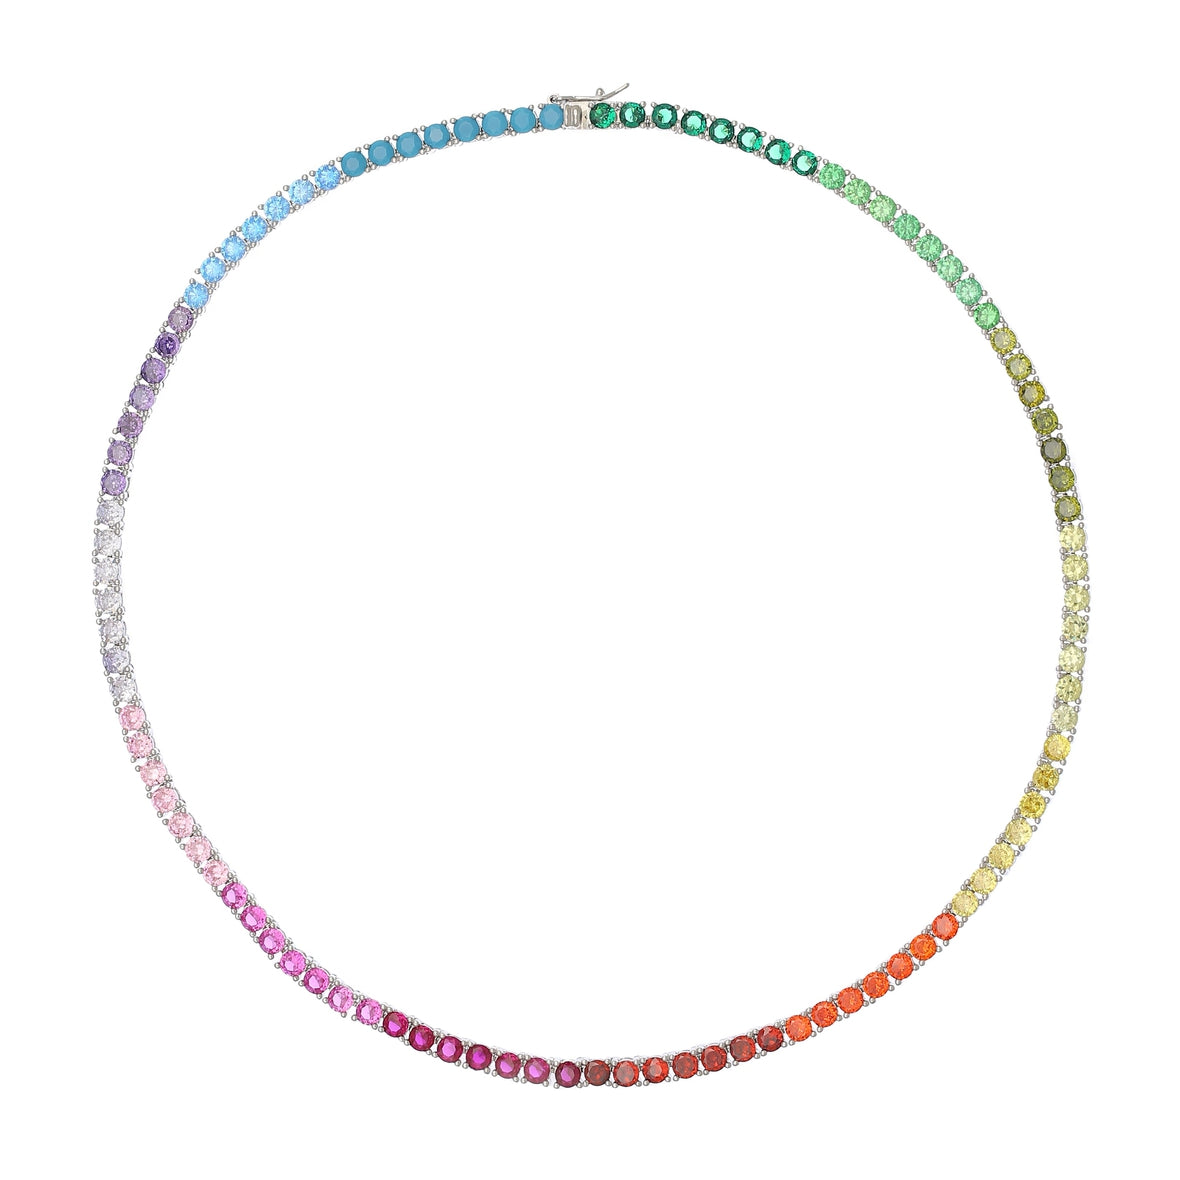 Clara Silver Rainbow 0.25 Carat Tennis Necklace